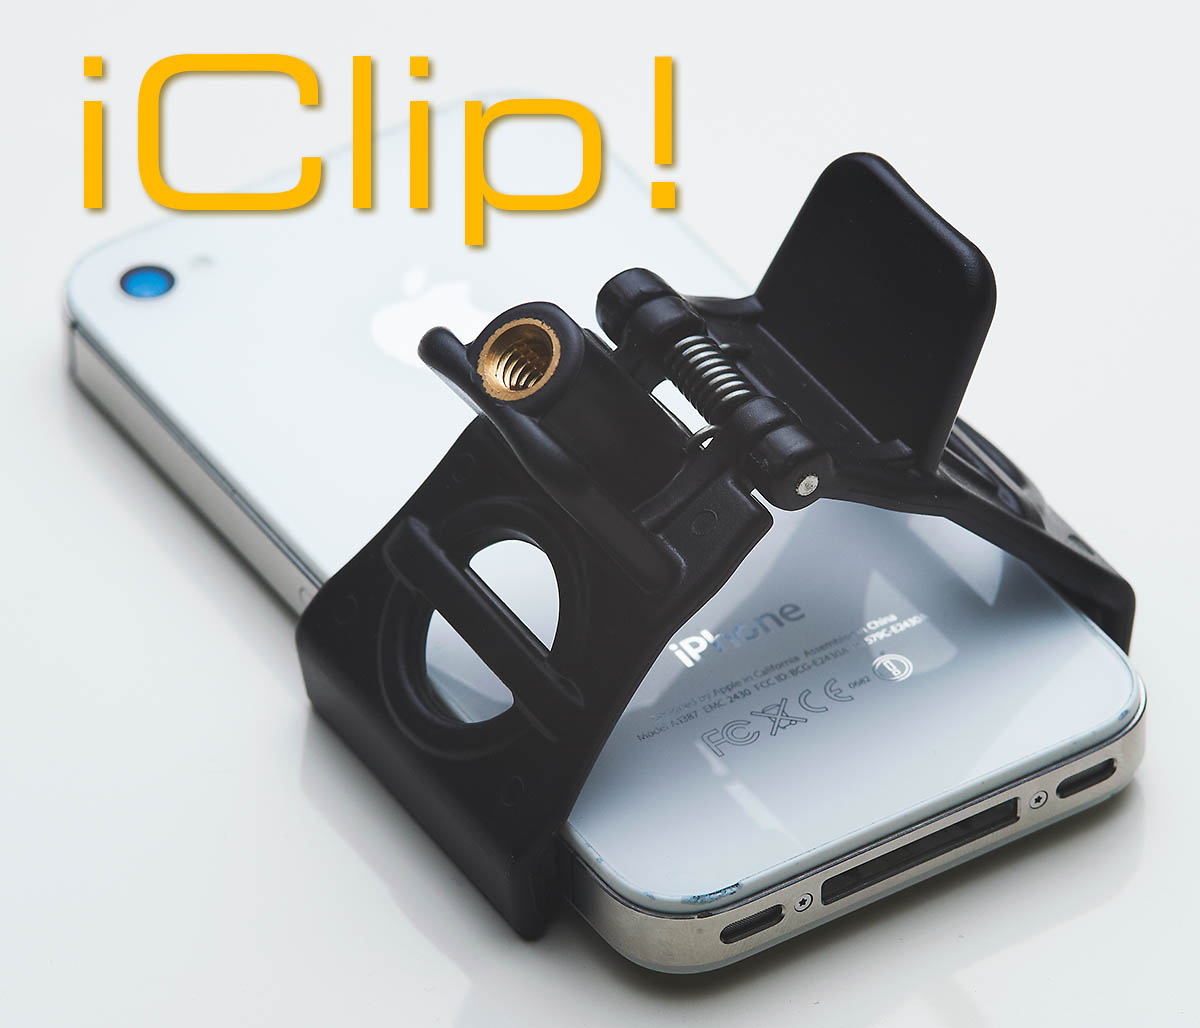 Iphoneの固定に役立つリーズナブルなガジェット Iclip アイクリップ 使える機材 Blog